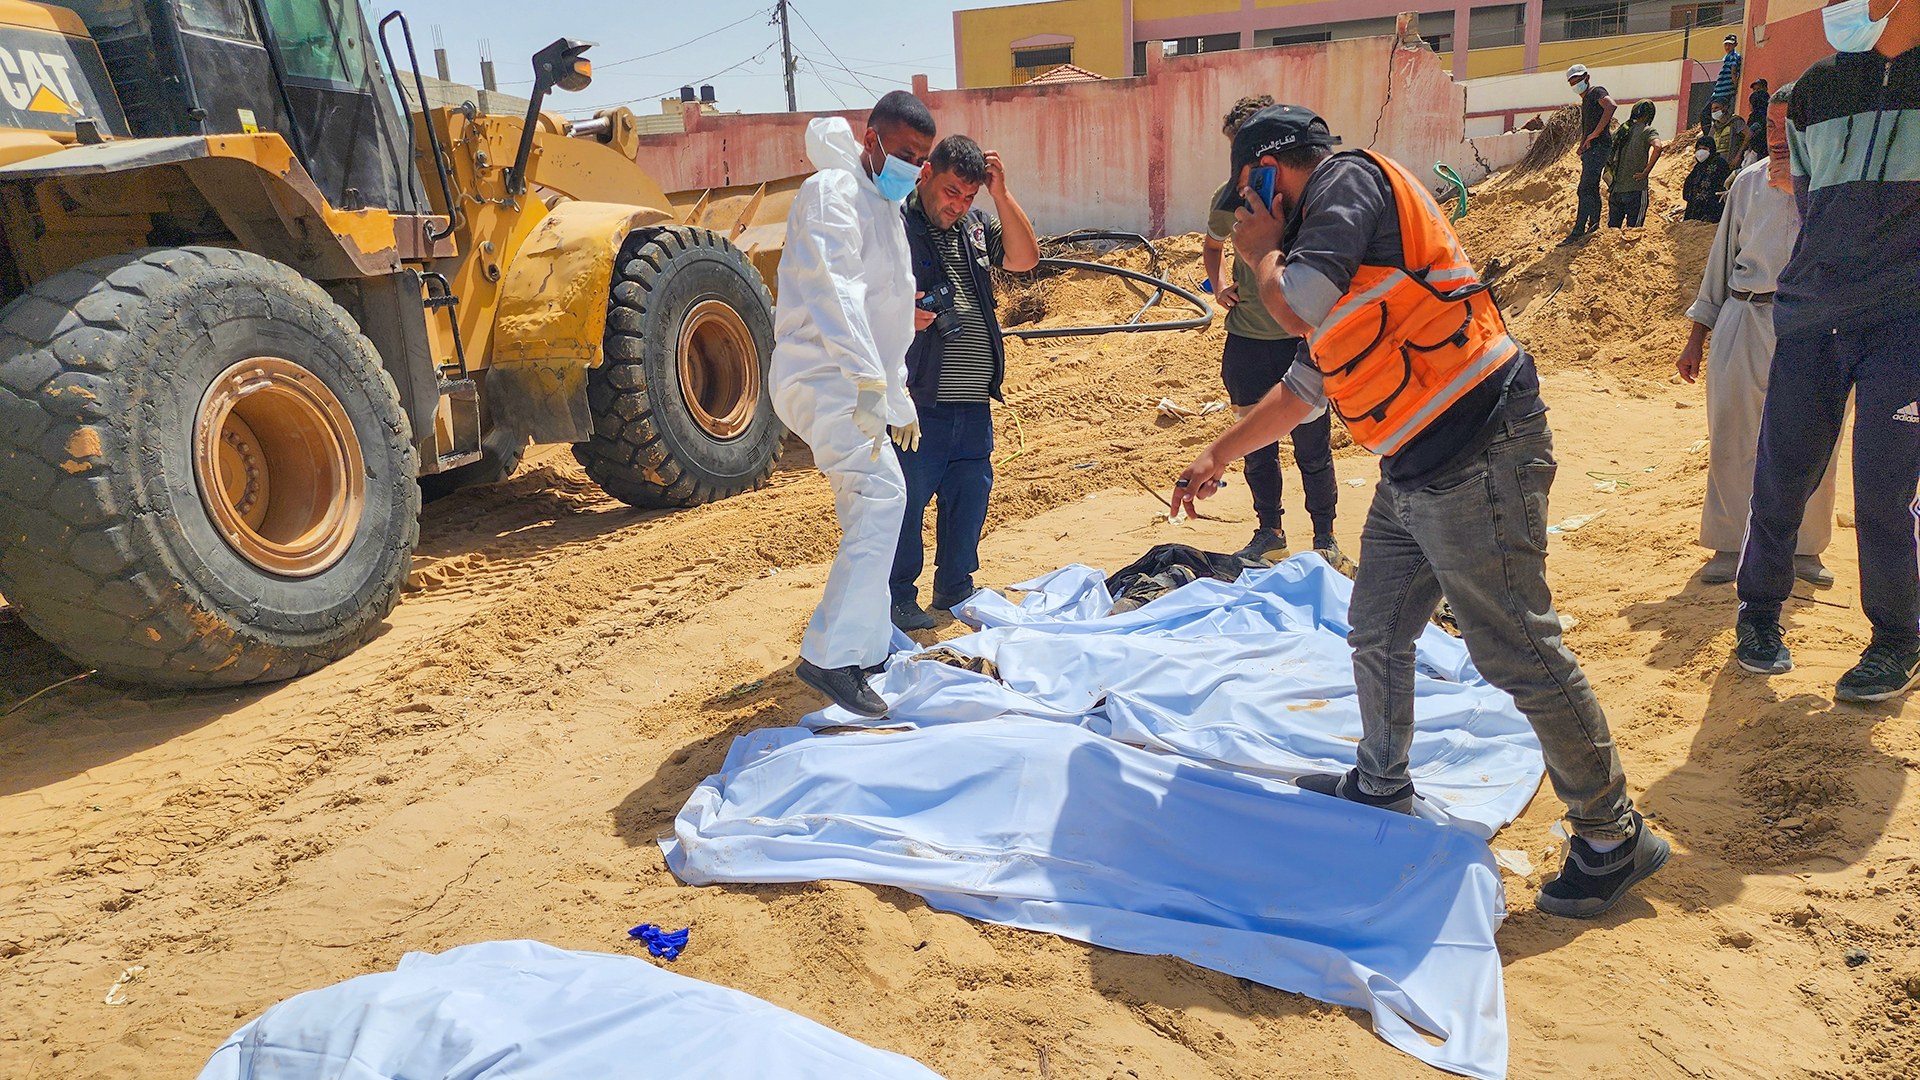 "Acreditamos que foram enterrados vivos": surgem detalhes assustadores de valas comuns em Gaza